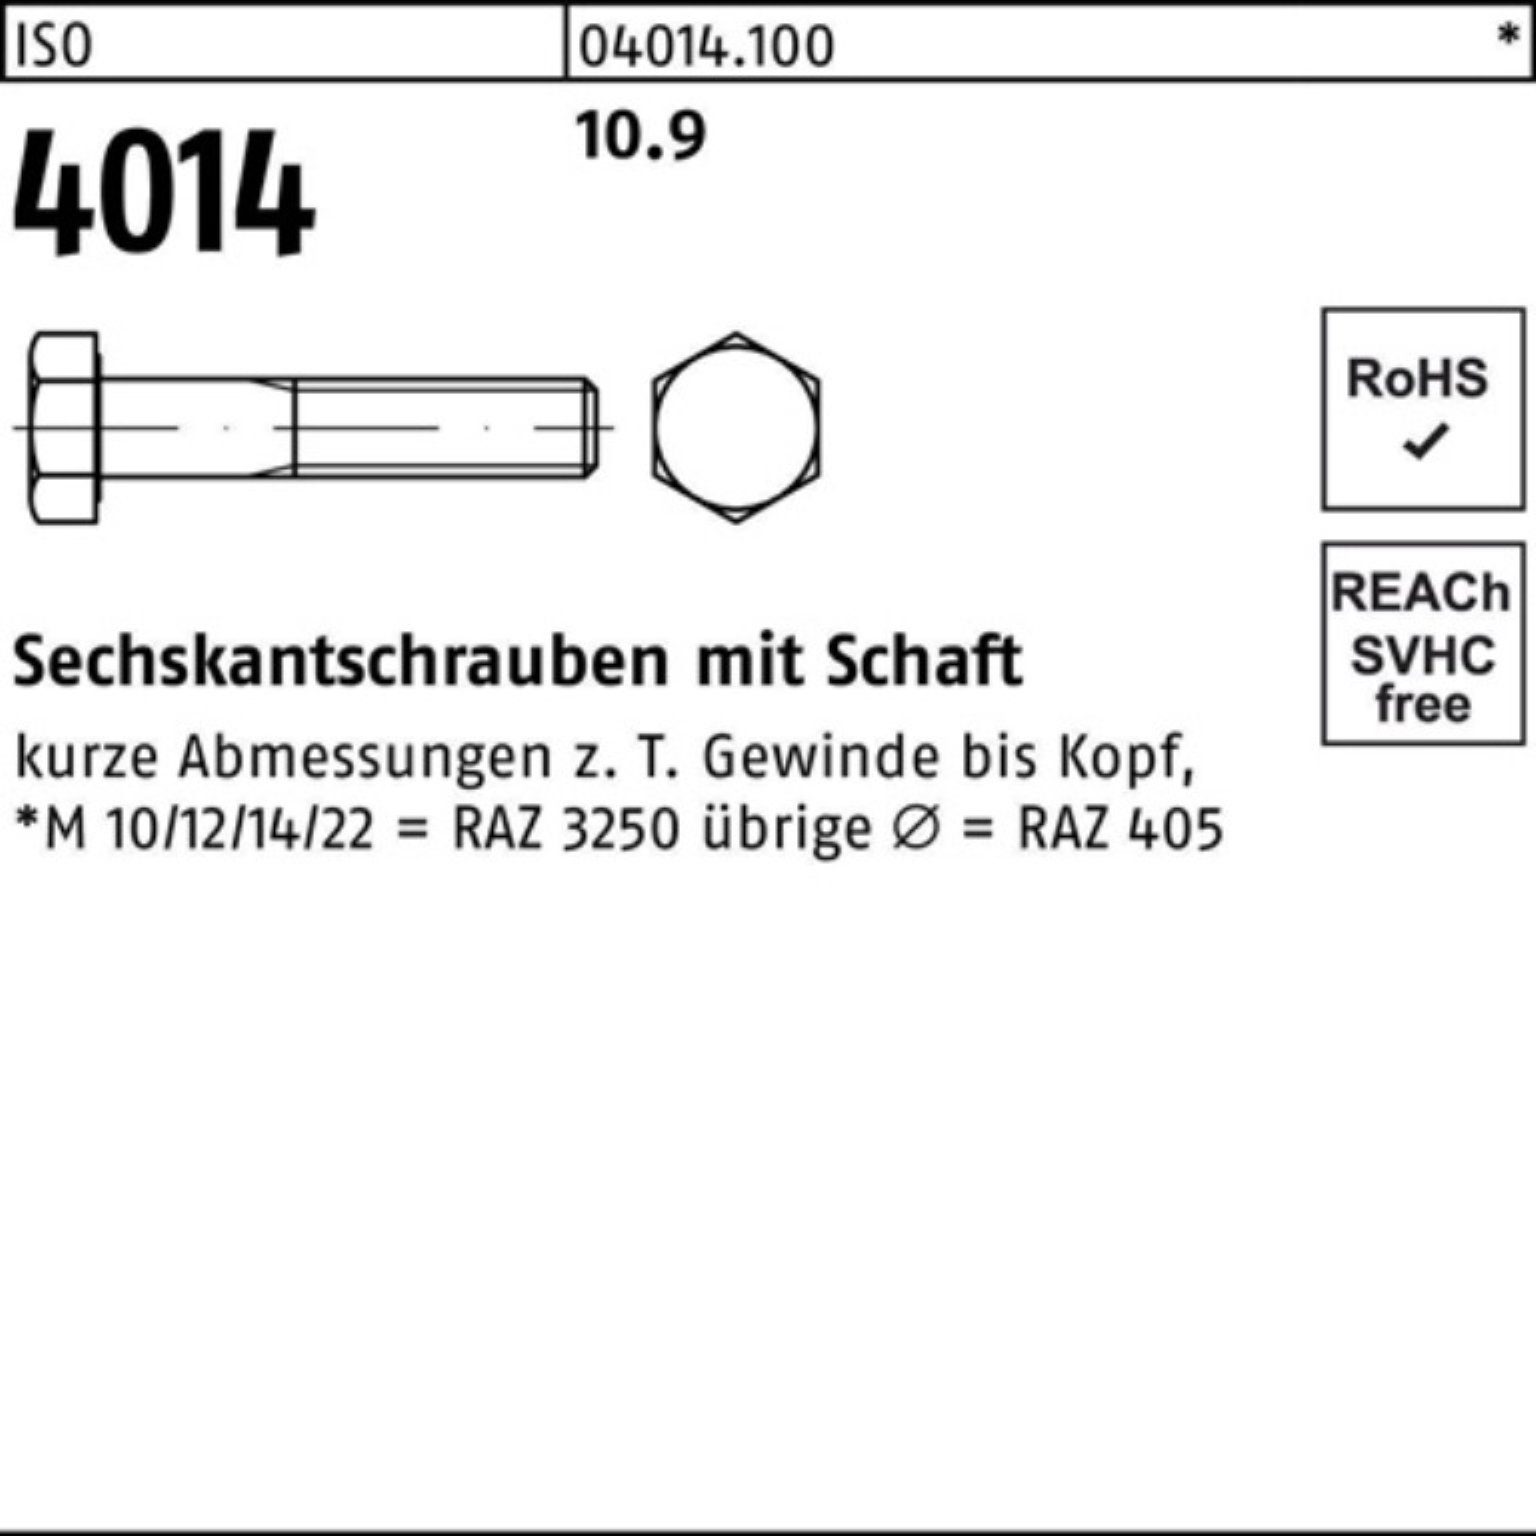 Bufab Sechskantschraube 100er Pack Sechskantschraube M45x 4014 ISO 10.9 1 Schaft 220 IS Stück